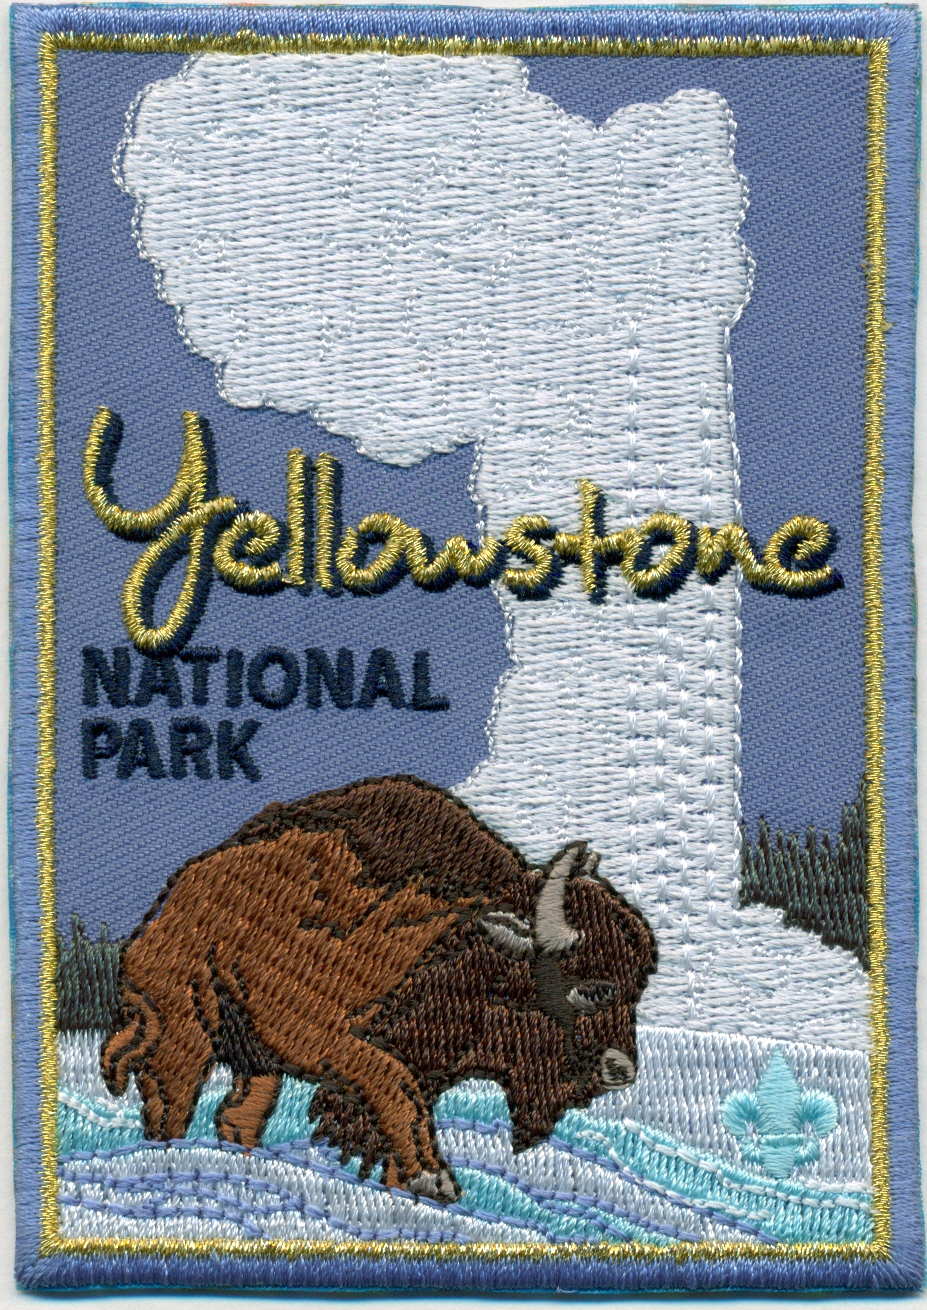 Yellowstone National Park emblem image